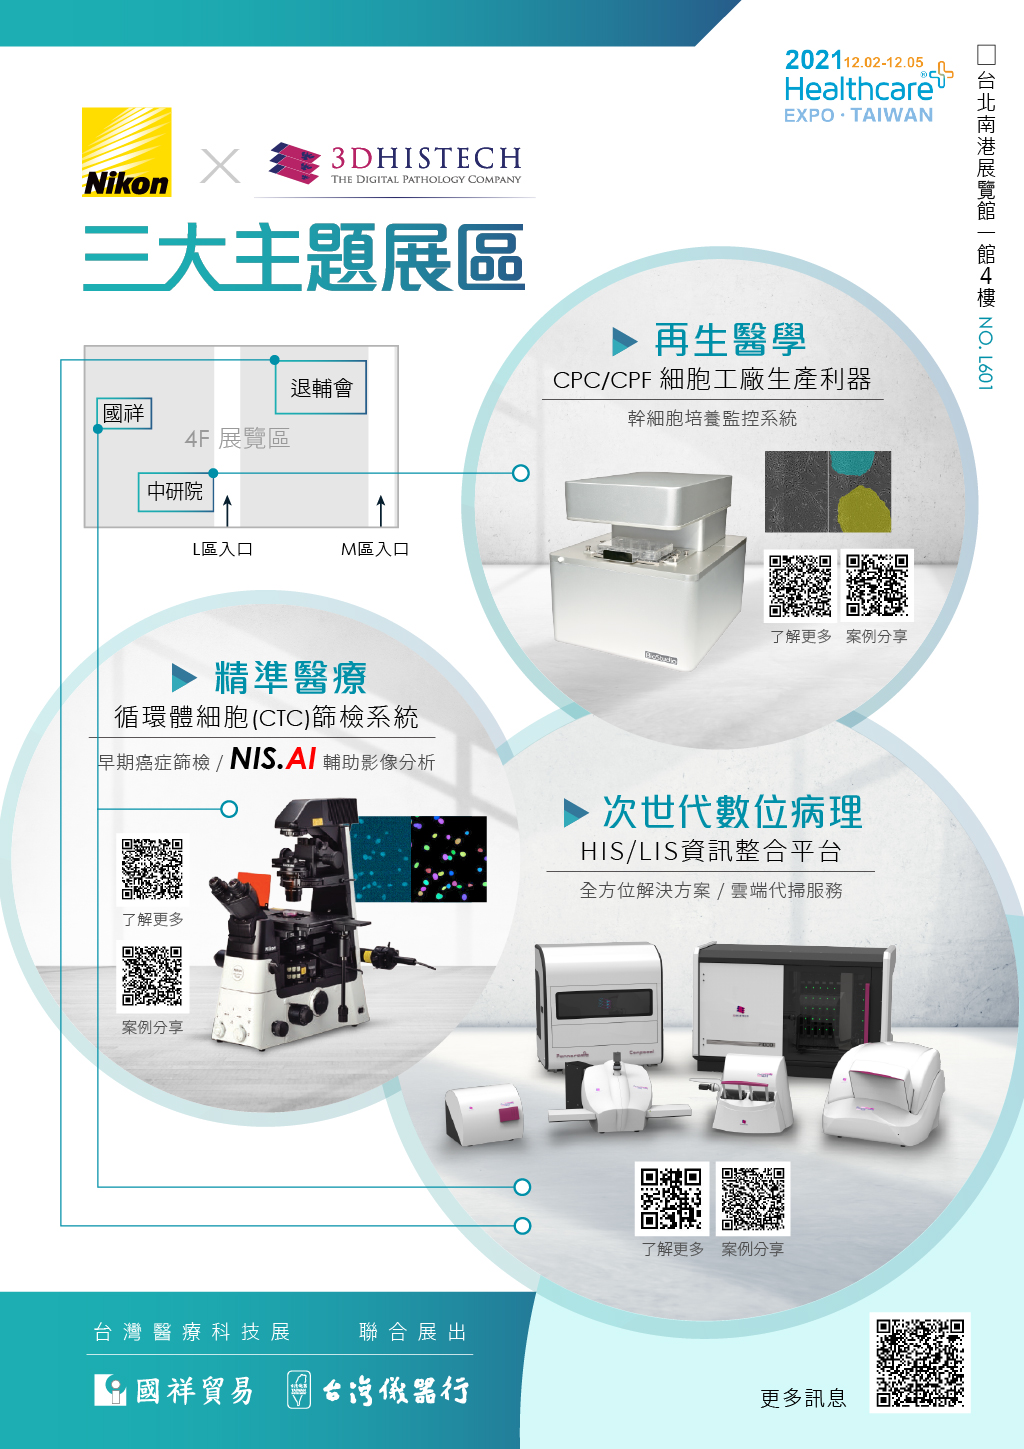 MicrosoftTeams-image (8).png - 2021台灣醫療科技展